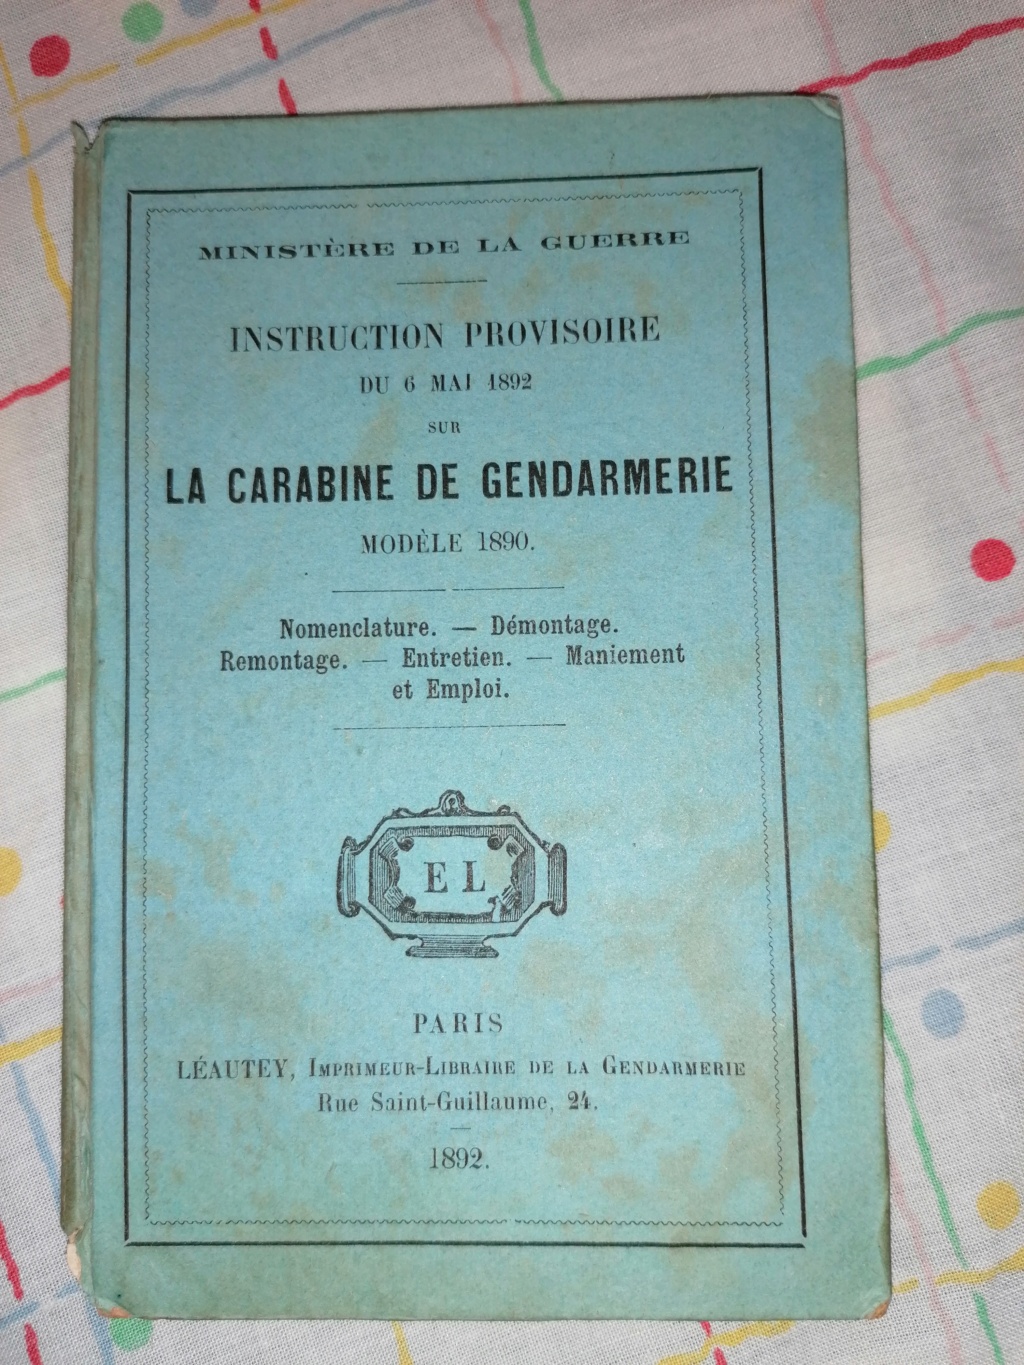  Instructions sommaires sur le revolver modèle 1892 Img_2284